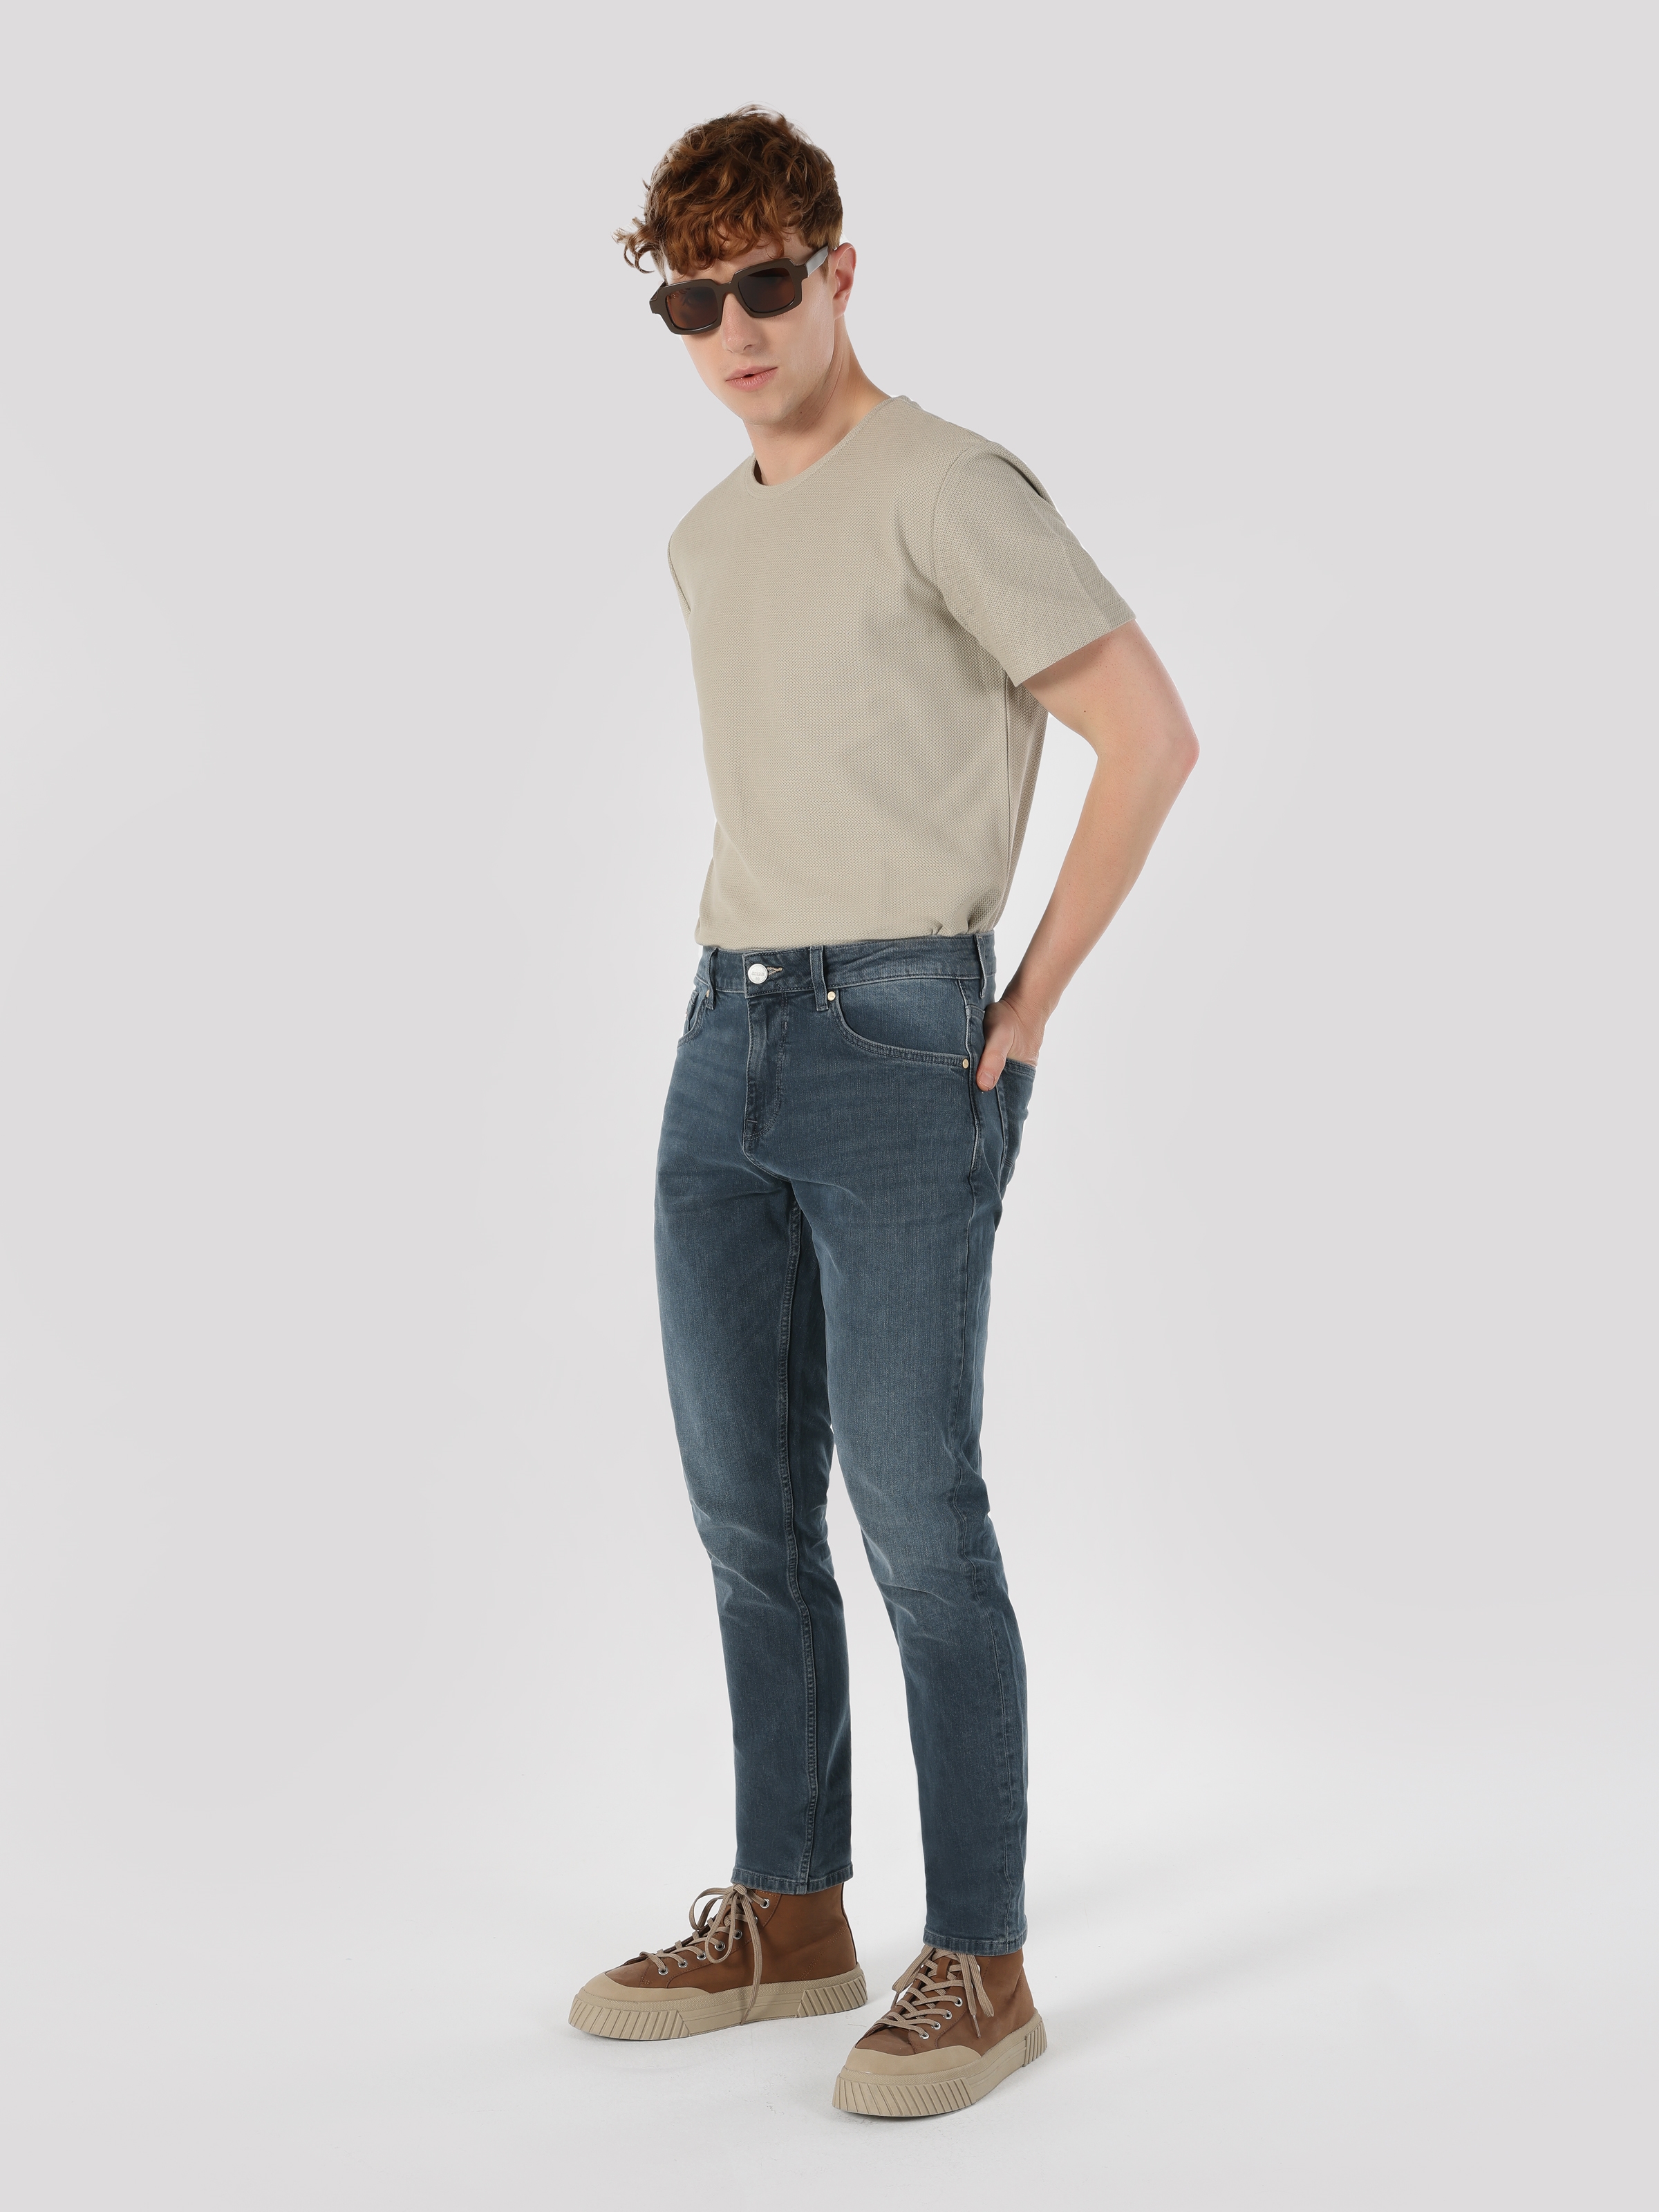 Afficher les détails de 067 Jack Normal Fit Taille Normale Jambe Étroite Pantalon Jean Bleu Foncé Pour Homme